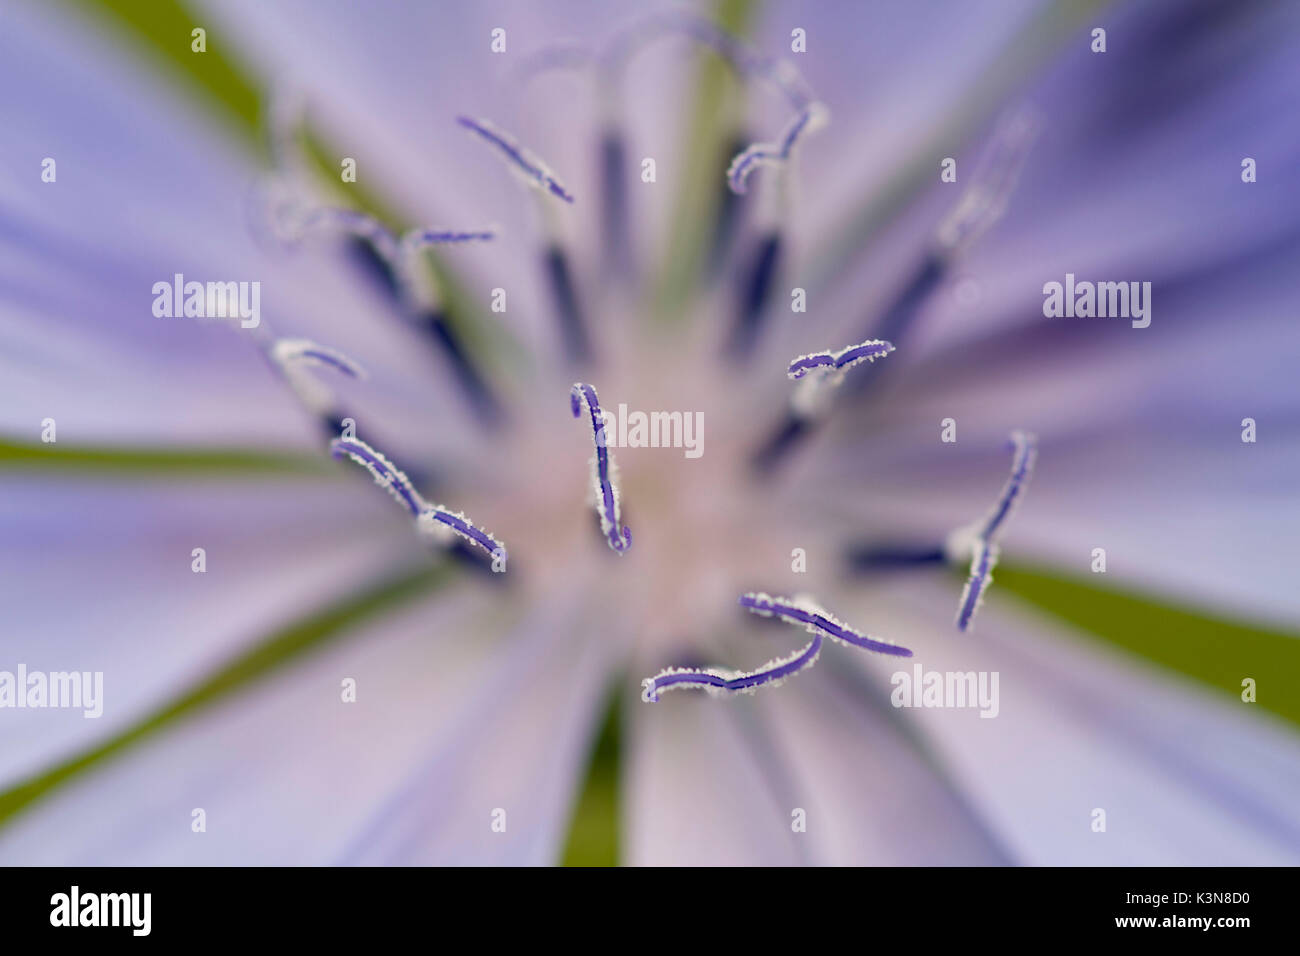 Ein Makro Detail des pollenstäubens von Cicoria comune Blume oder Cichorium, Asteraceae Familie. Lombardei, Italien Stockfoto